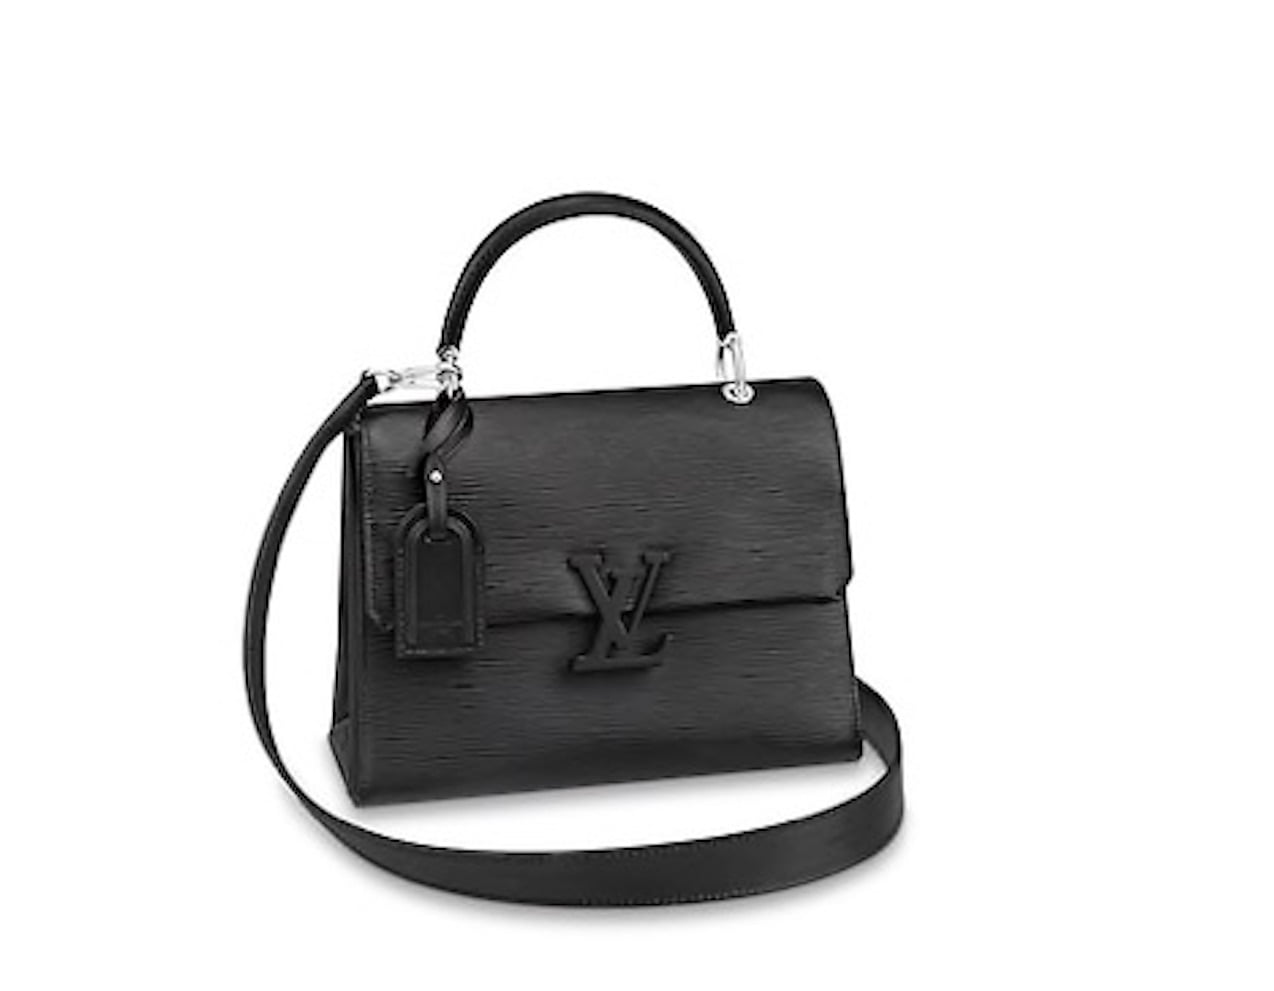 Free Coach or Louis Vuitton purses, please! : r/ChoosingBeggars